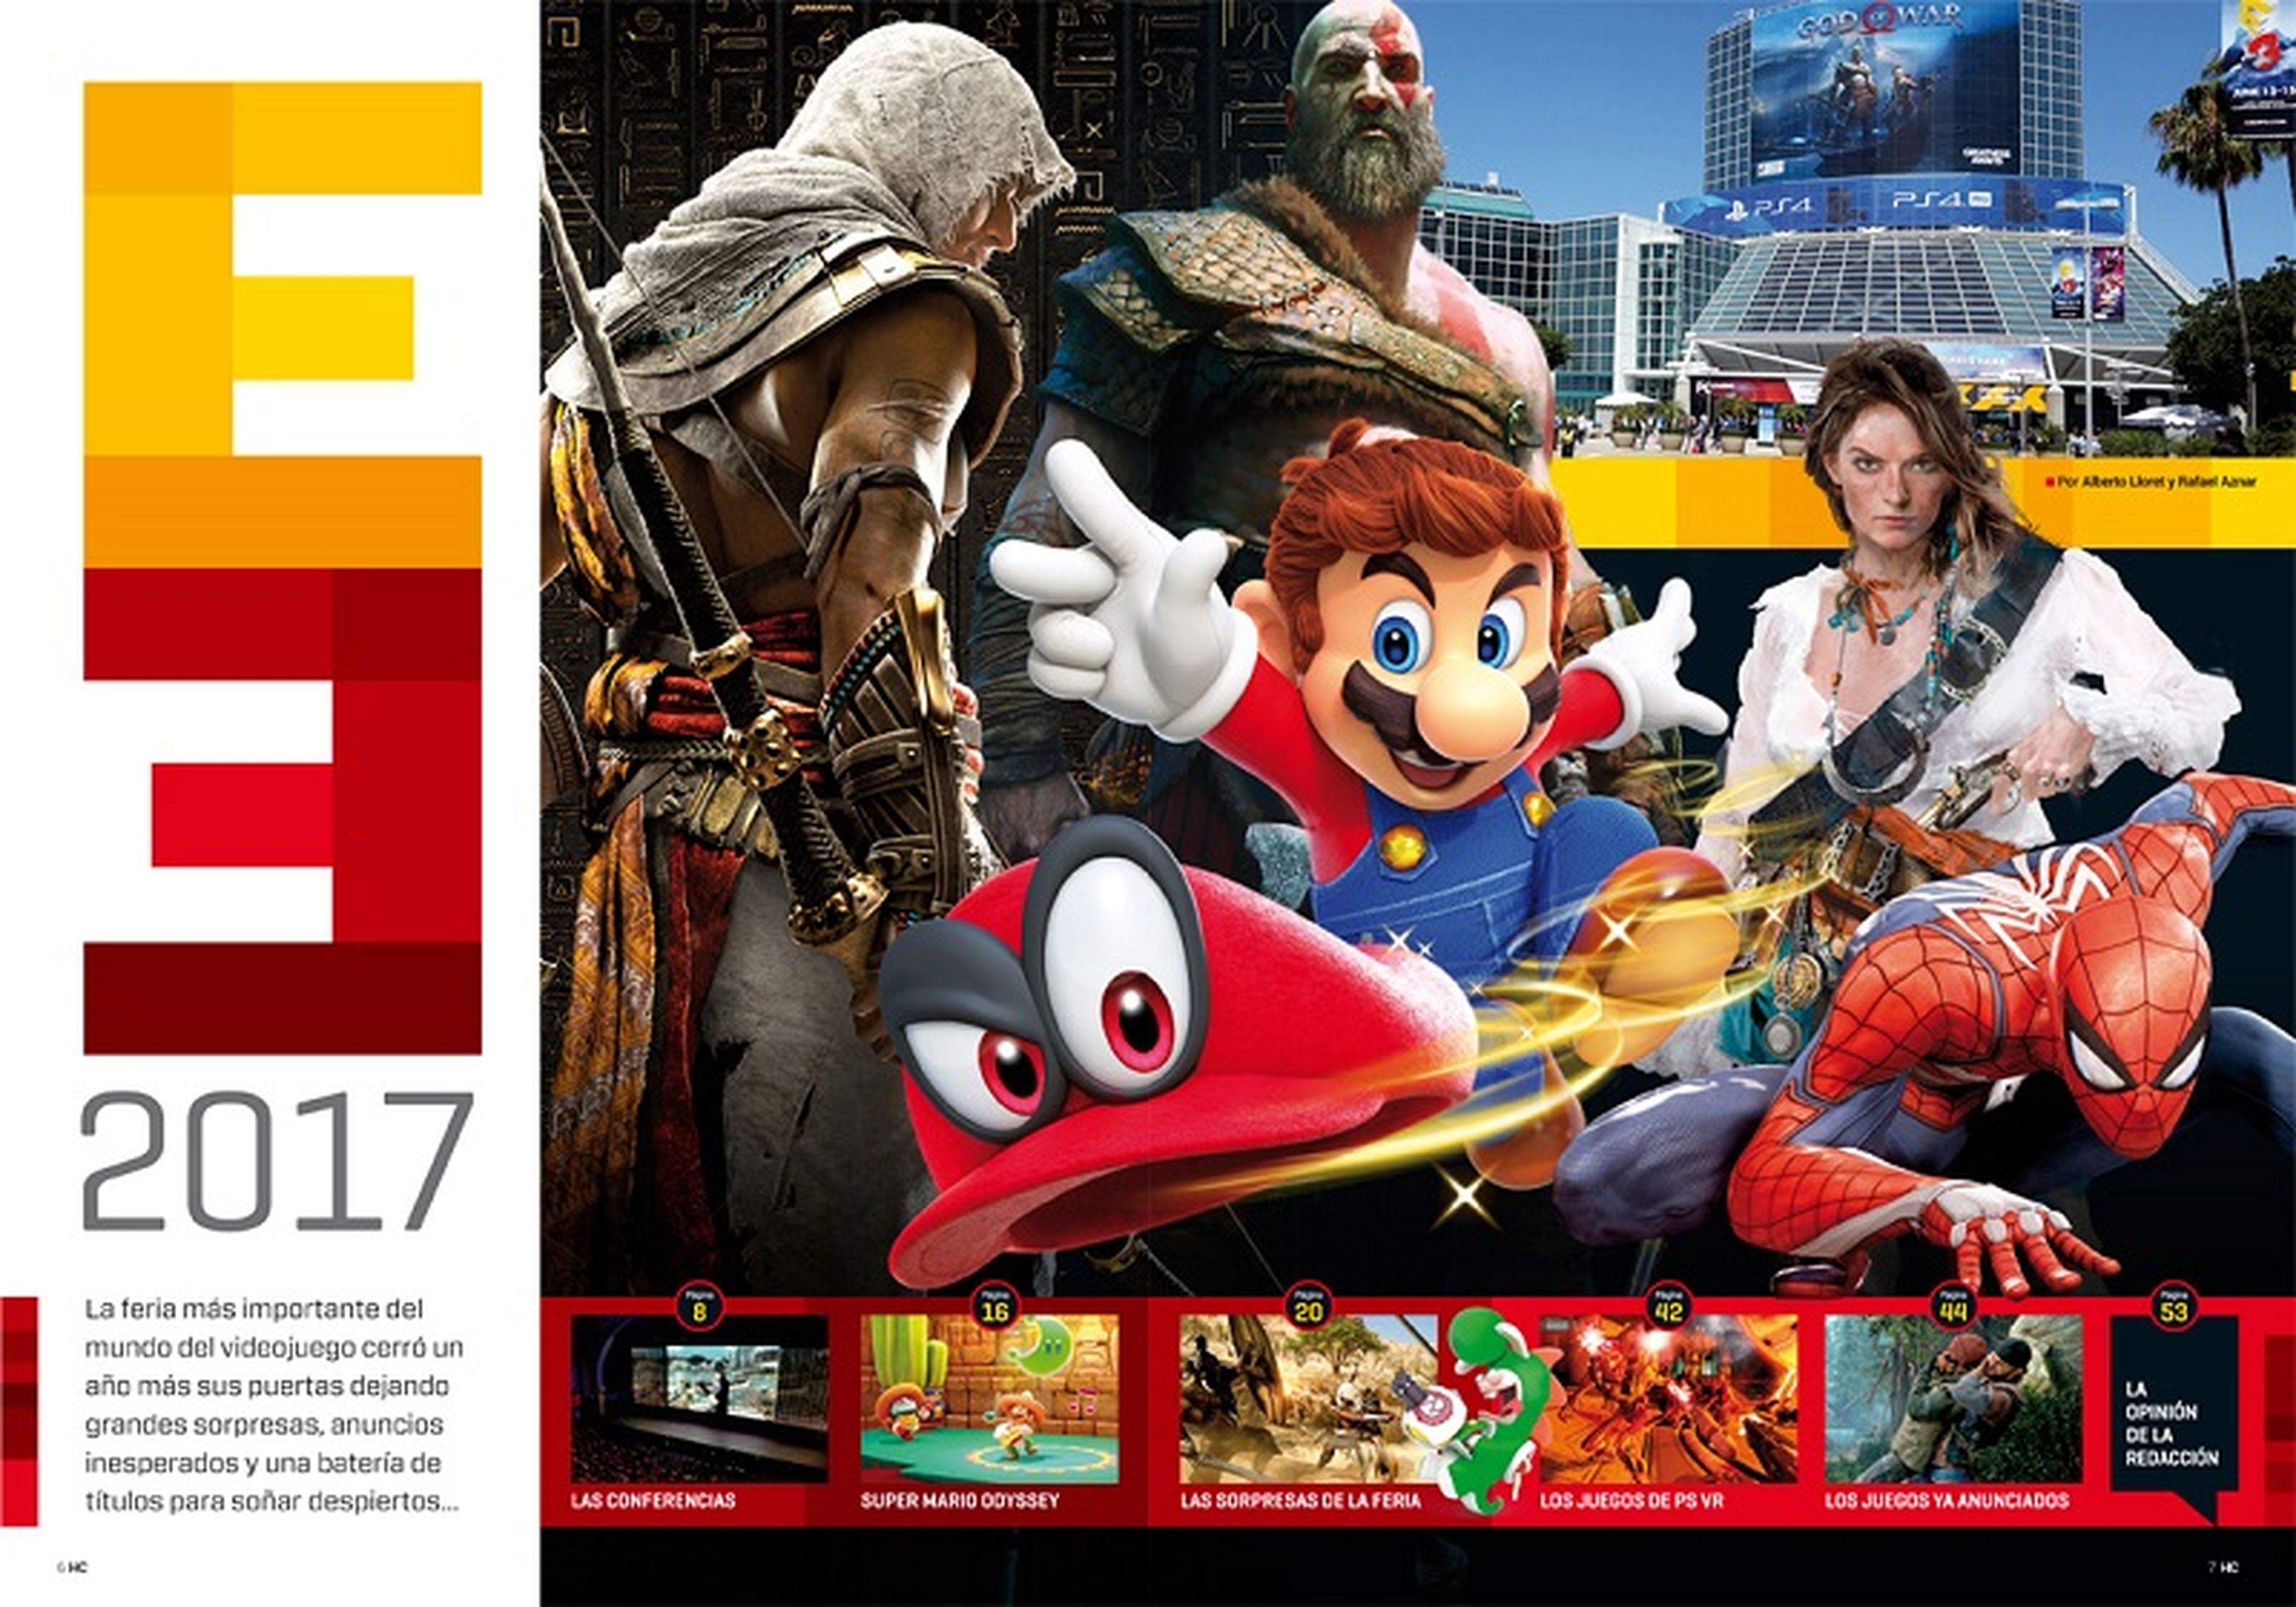 Hobby Consolas 312: Todo el E3 y pósters de Mario Odyssey y Assassin's Creed